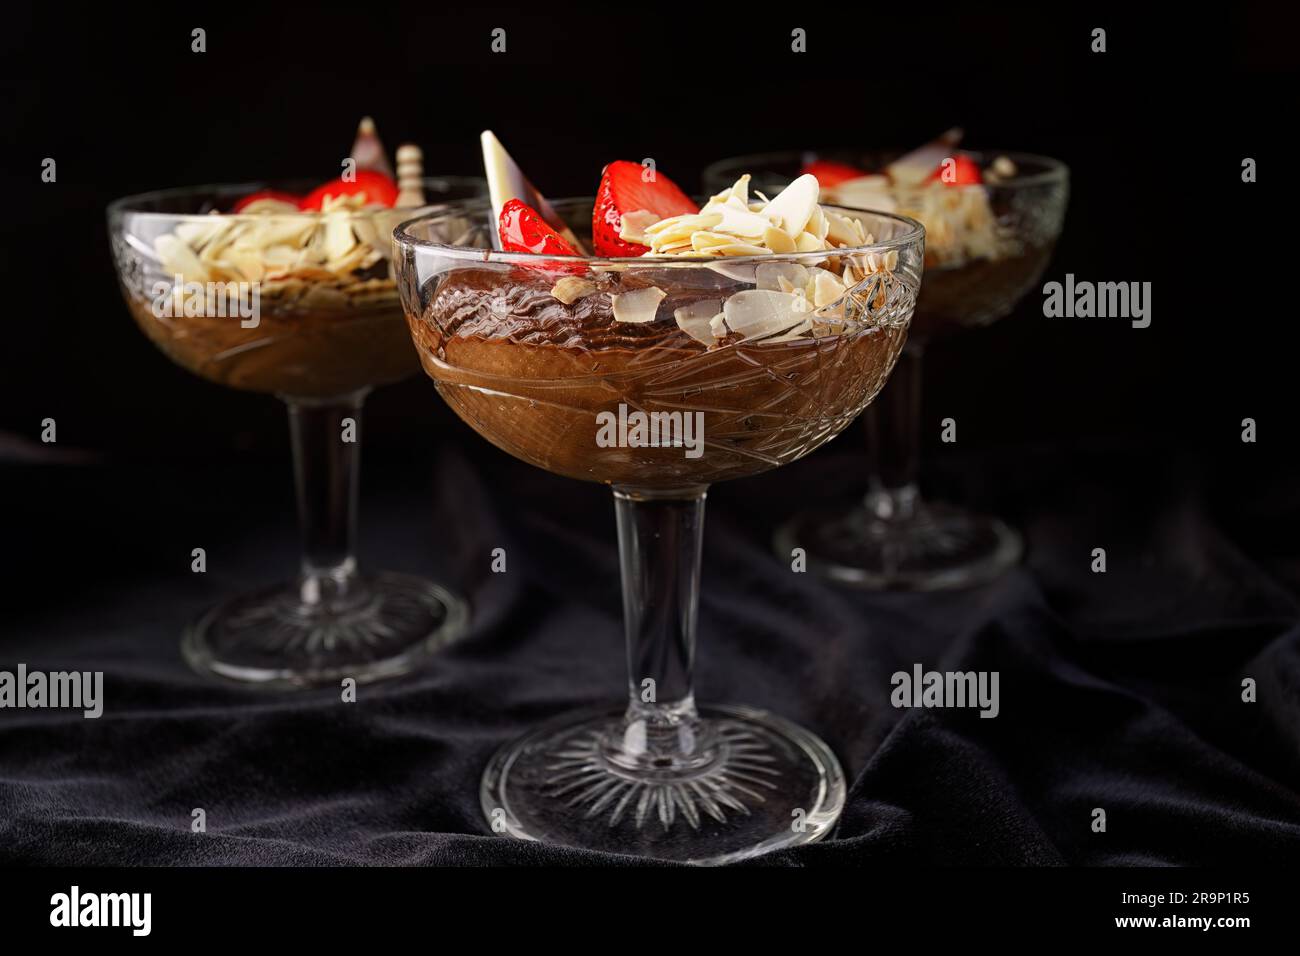 Schokoladendessert mit Erdbeeren auf schwarzem Hintergrund in einer Glasschüssel Stockfoto